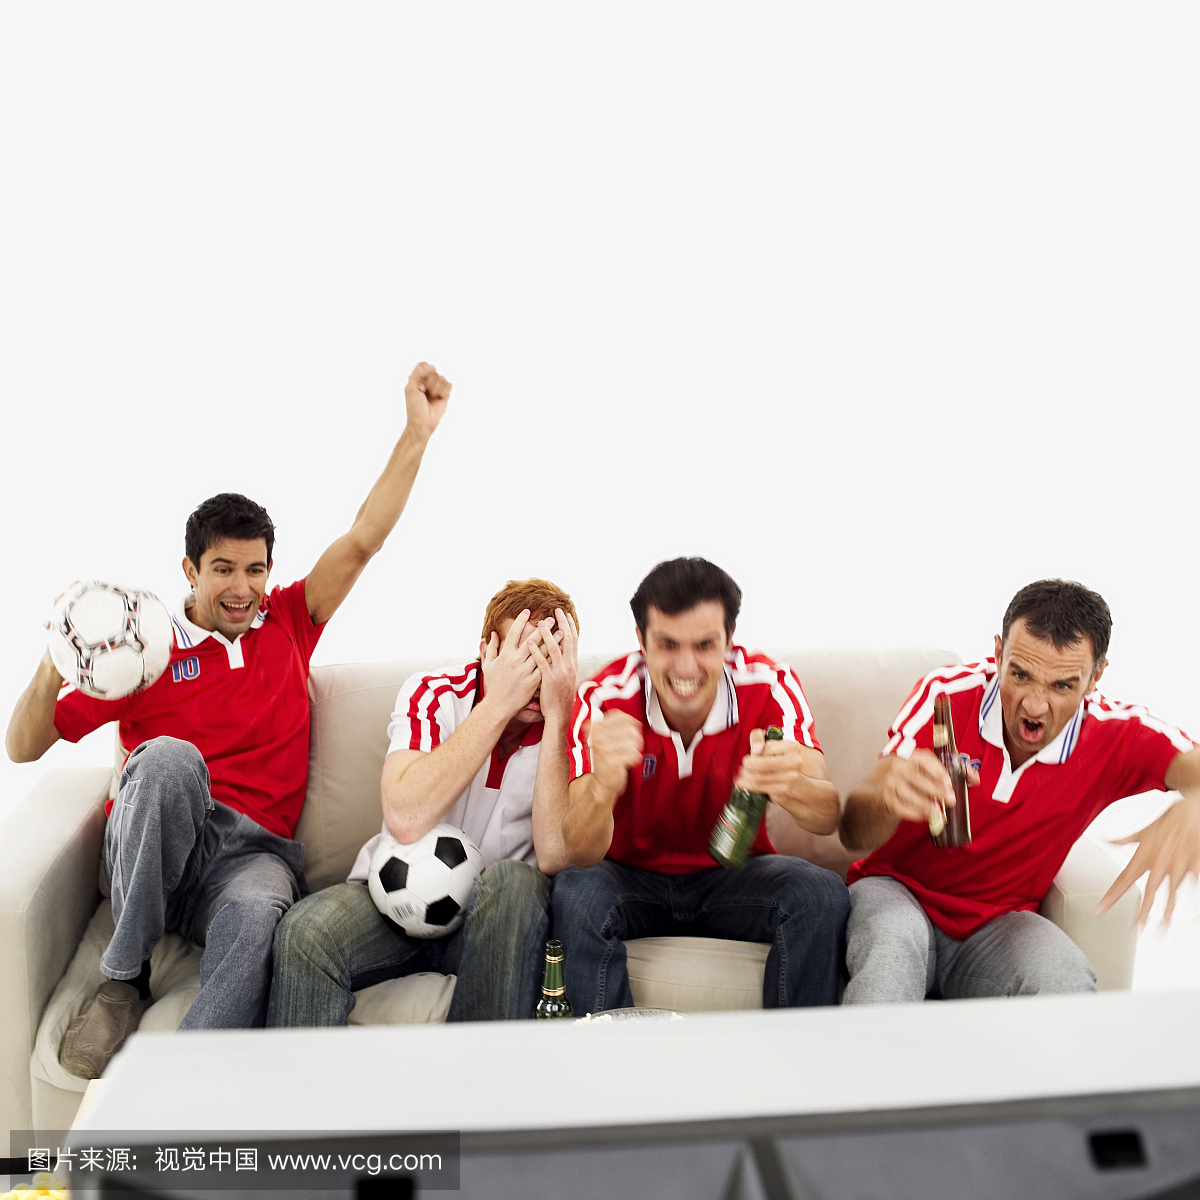 一群四名男子在电视上看足球比赛